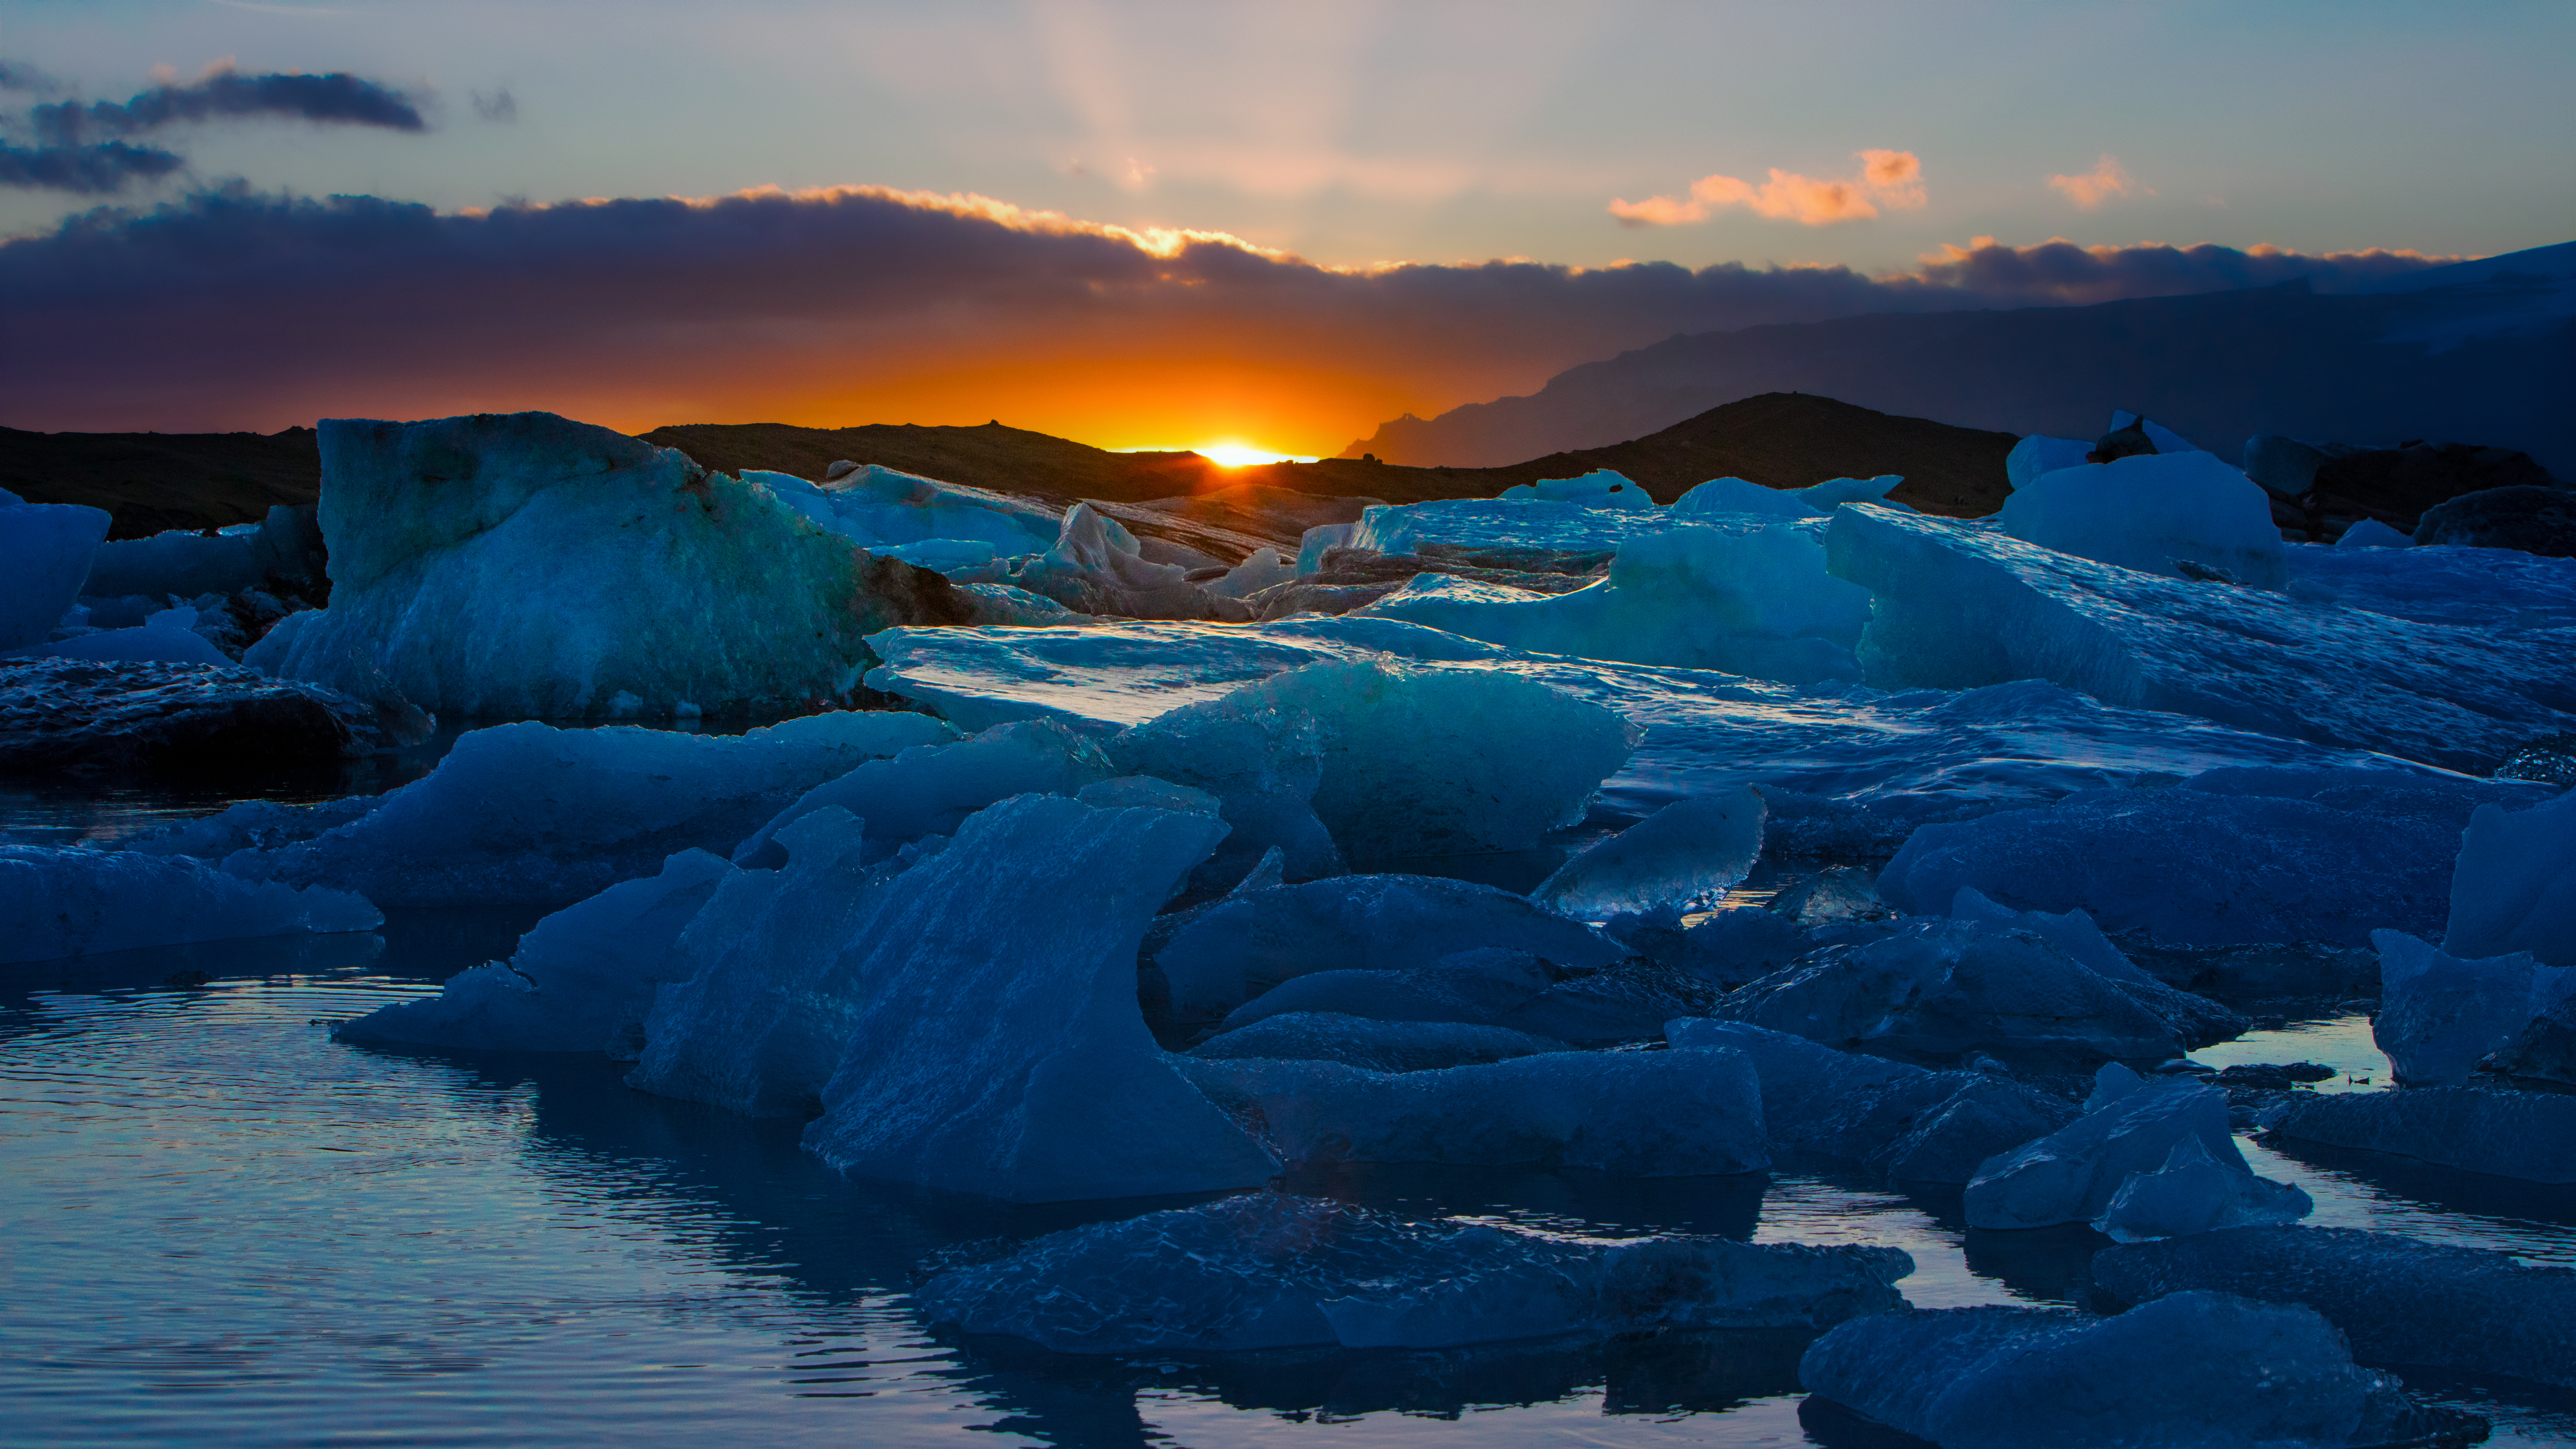 Sunset at the Iceberg Lagoon